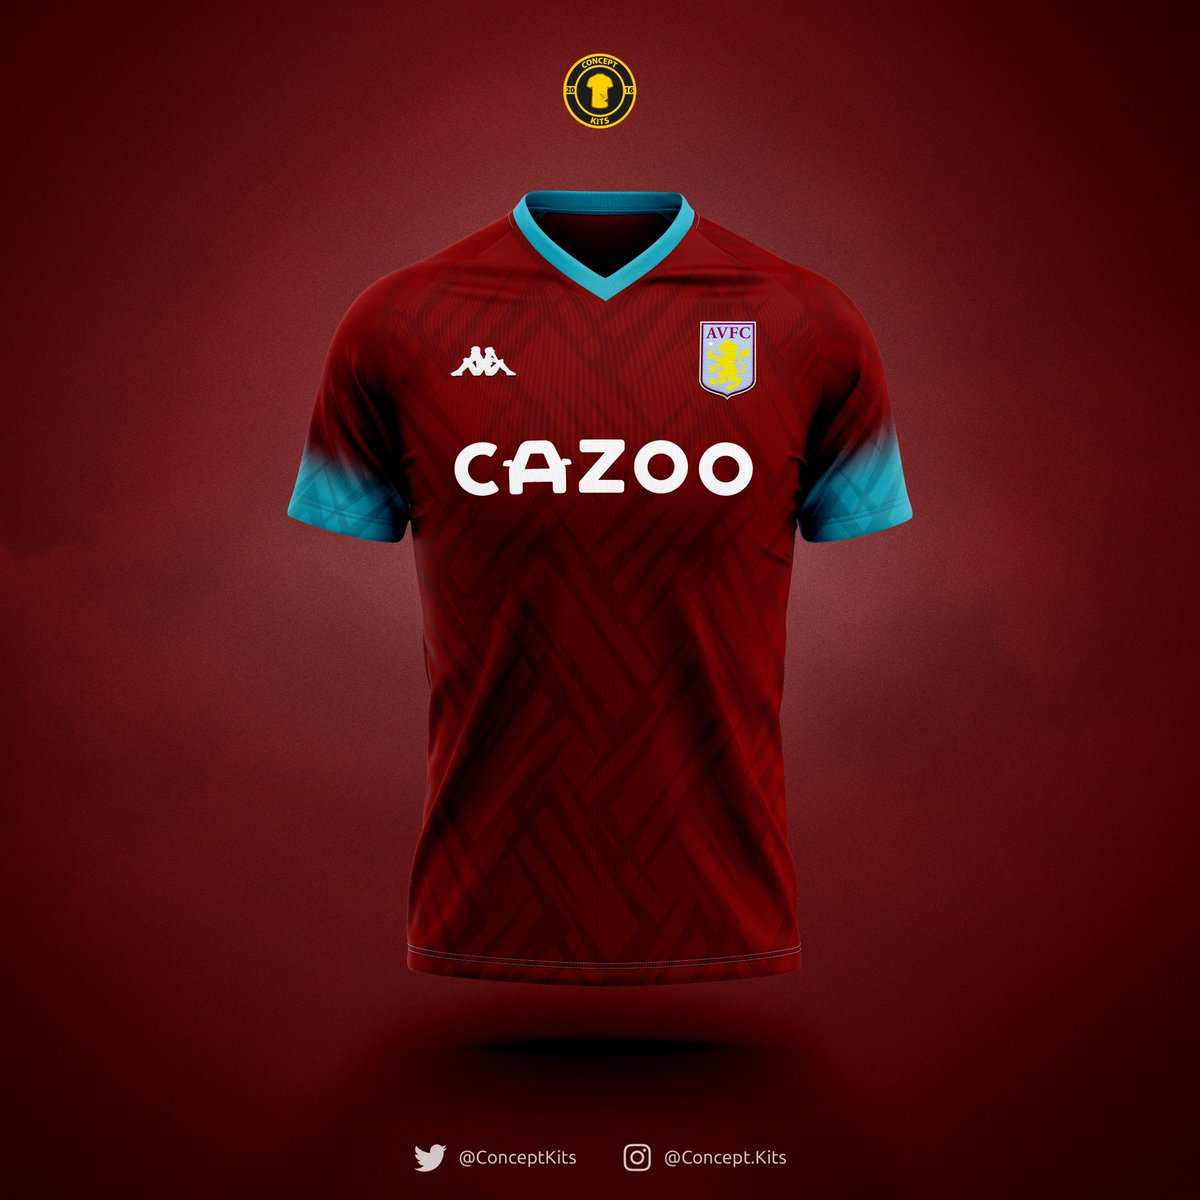 aston villa 2021 kit